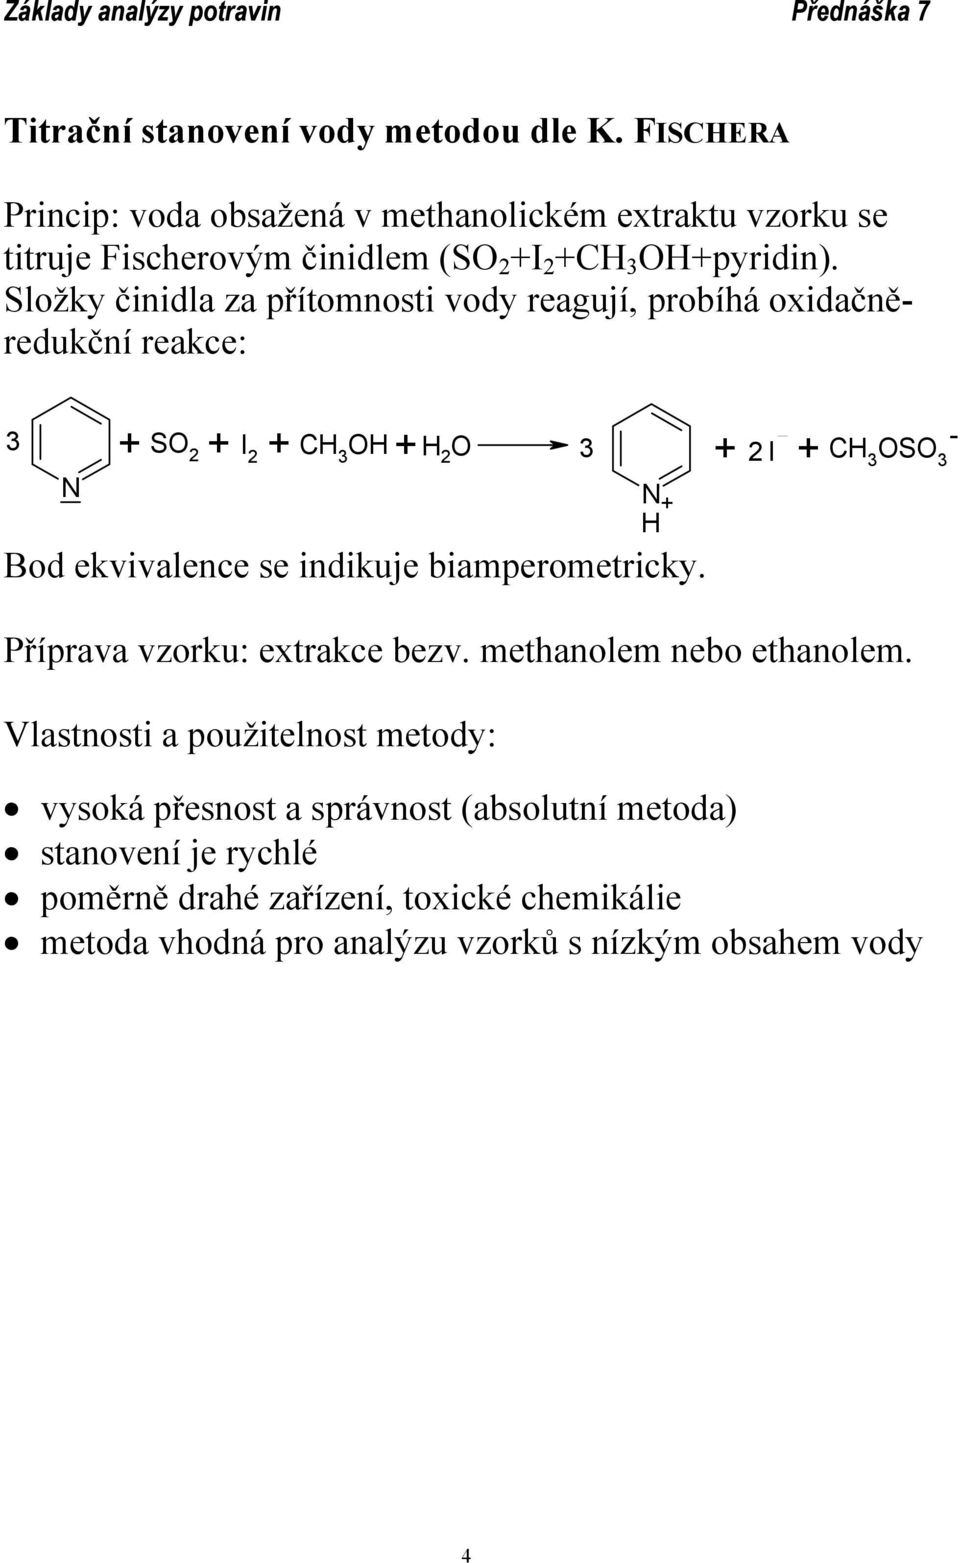 Složky činidla za přítomnosti vody reagují, probíhá oxidačněredukční reakce: N SO 2 I 2 CH 3 OH CH 3 OSO - 2 I 3 3 + + + + H 2 O 3 + + Bod ekvivalence